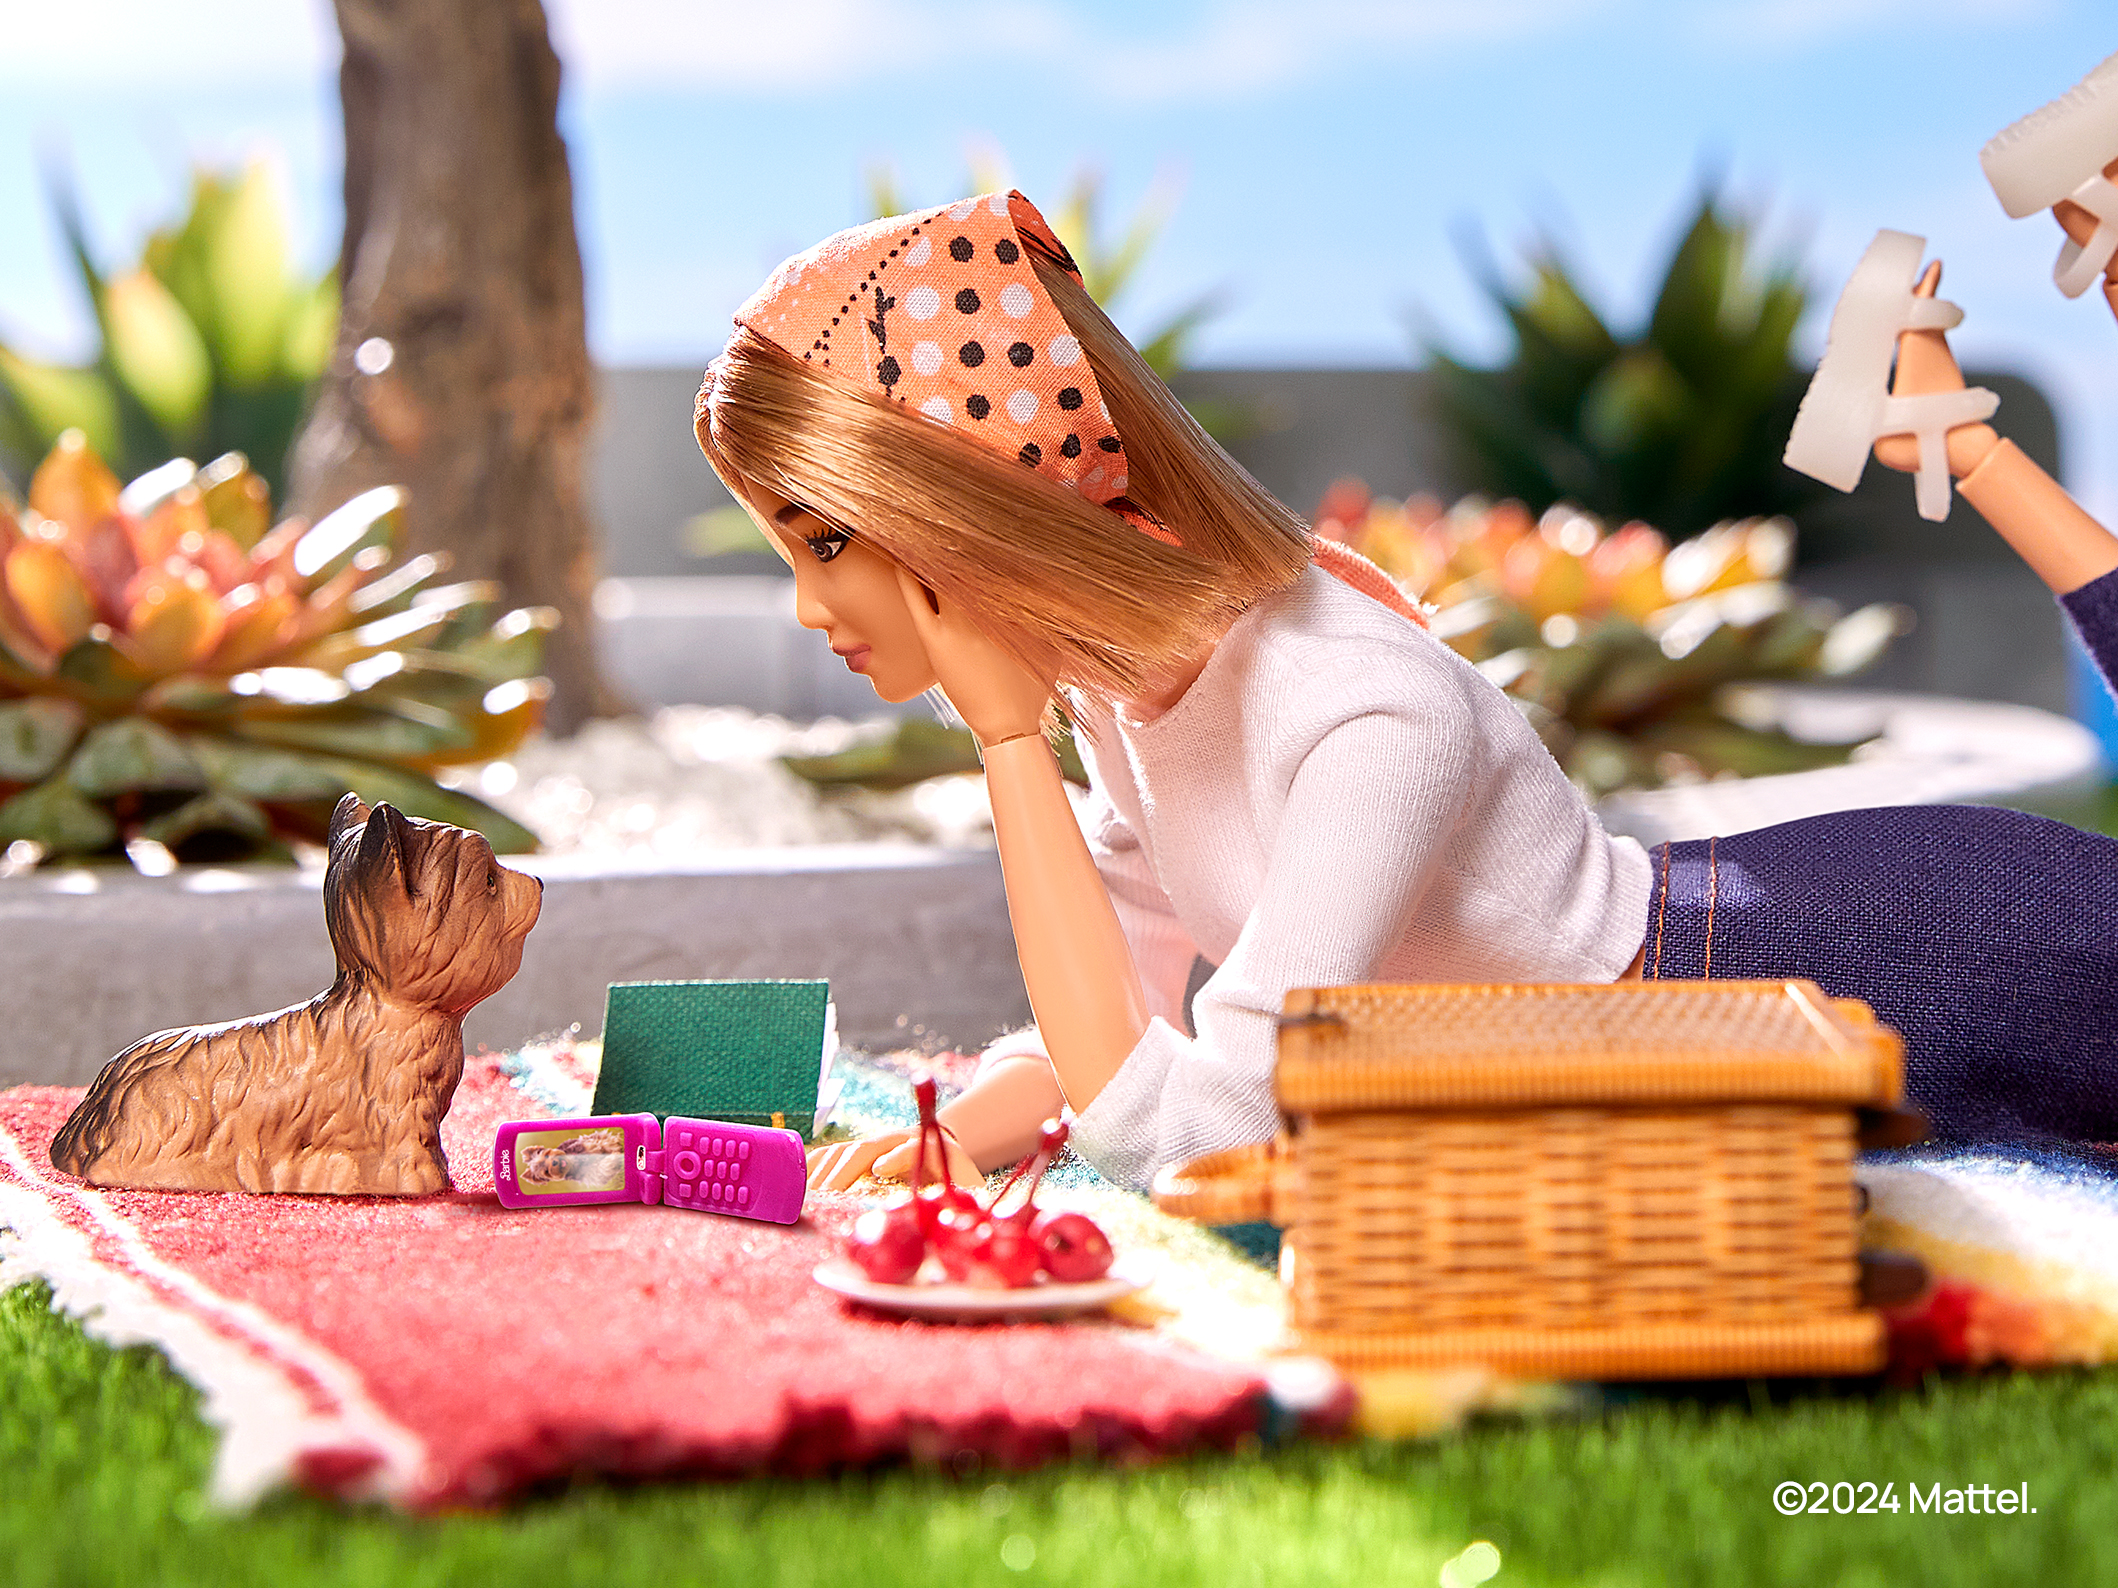 HMD bereitet ein Barbie-ähnliches "Clamshell" und ein modulares Smartphone vor, das zu Hause repariert werden kann